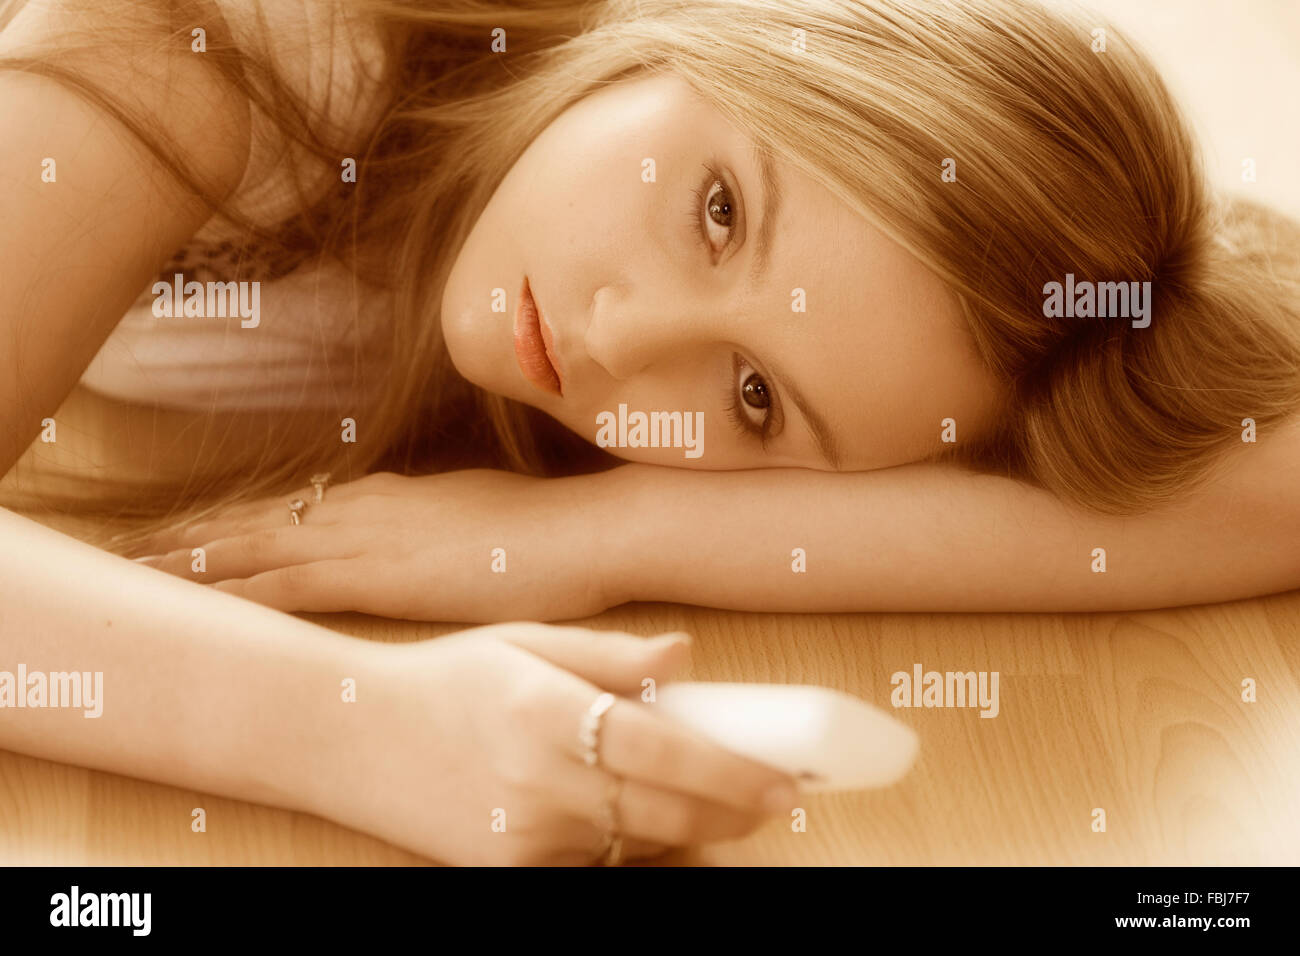 Schöne junge Frau, 16 Jahre alt, Kopf und Schulter, blond, blaue Augen, mit traurigen Ausdruck, Telefon, während am Boden. Auge - Kontakt. Stockfoto